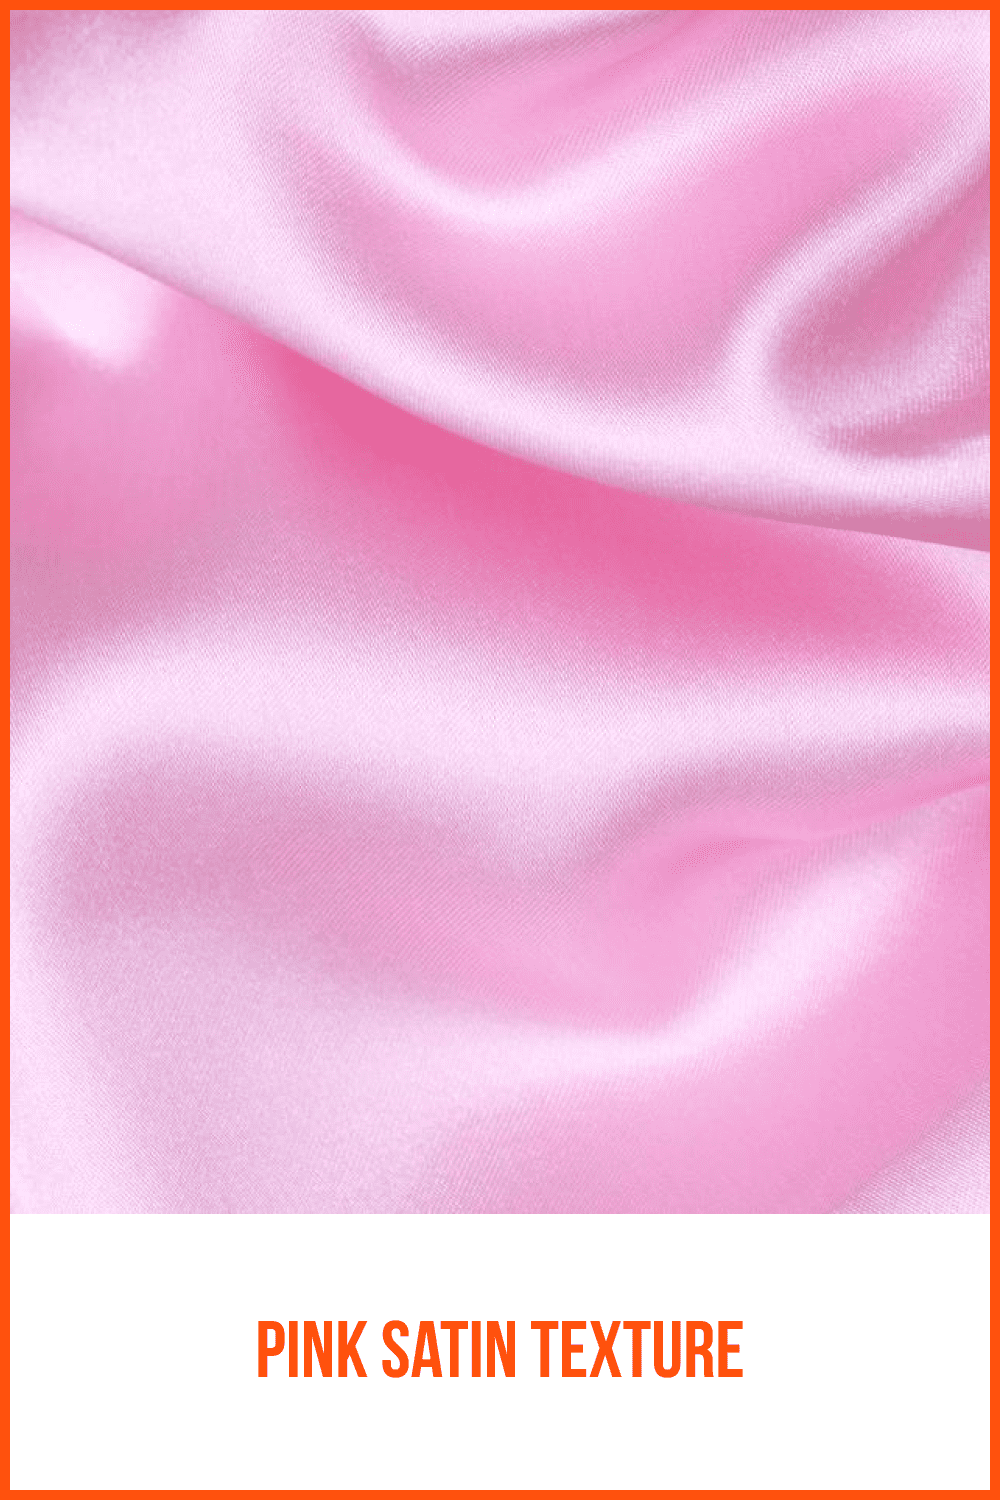 Pink Satin Texture.